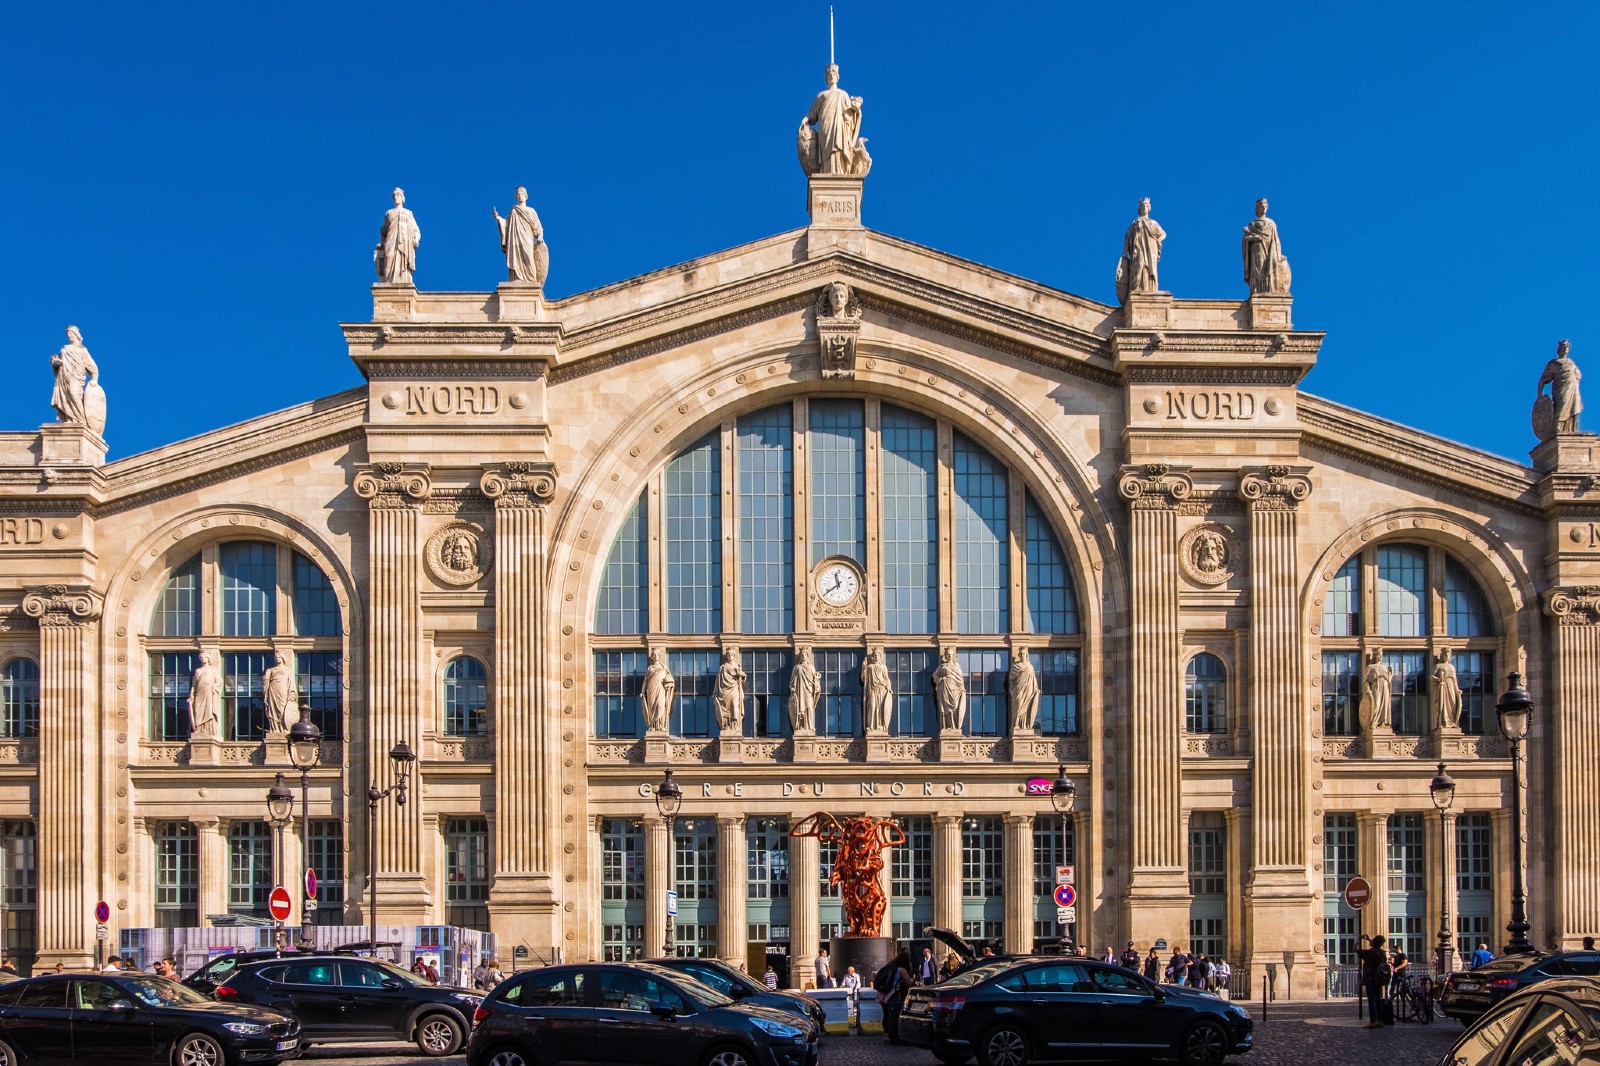 gare du nord paris tourist information